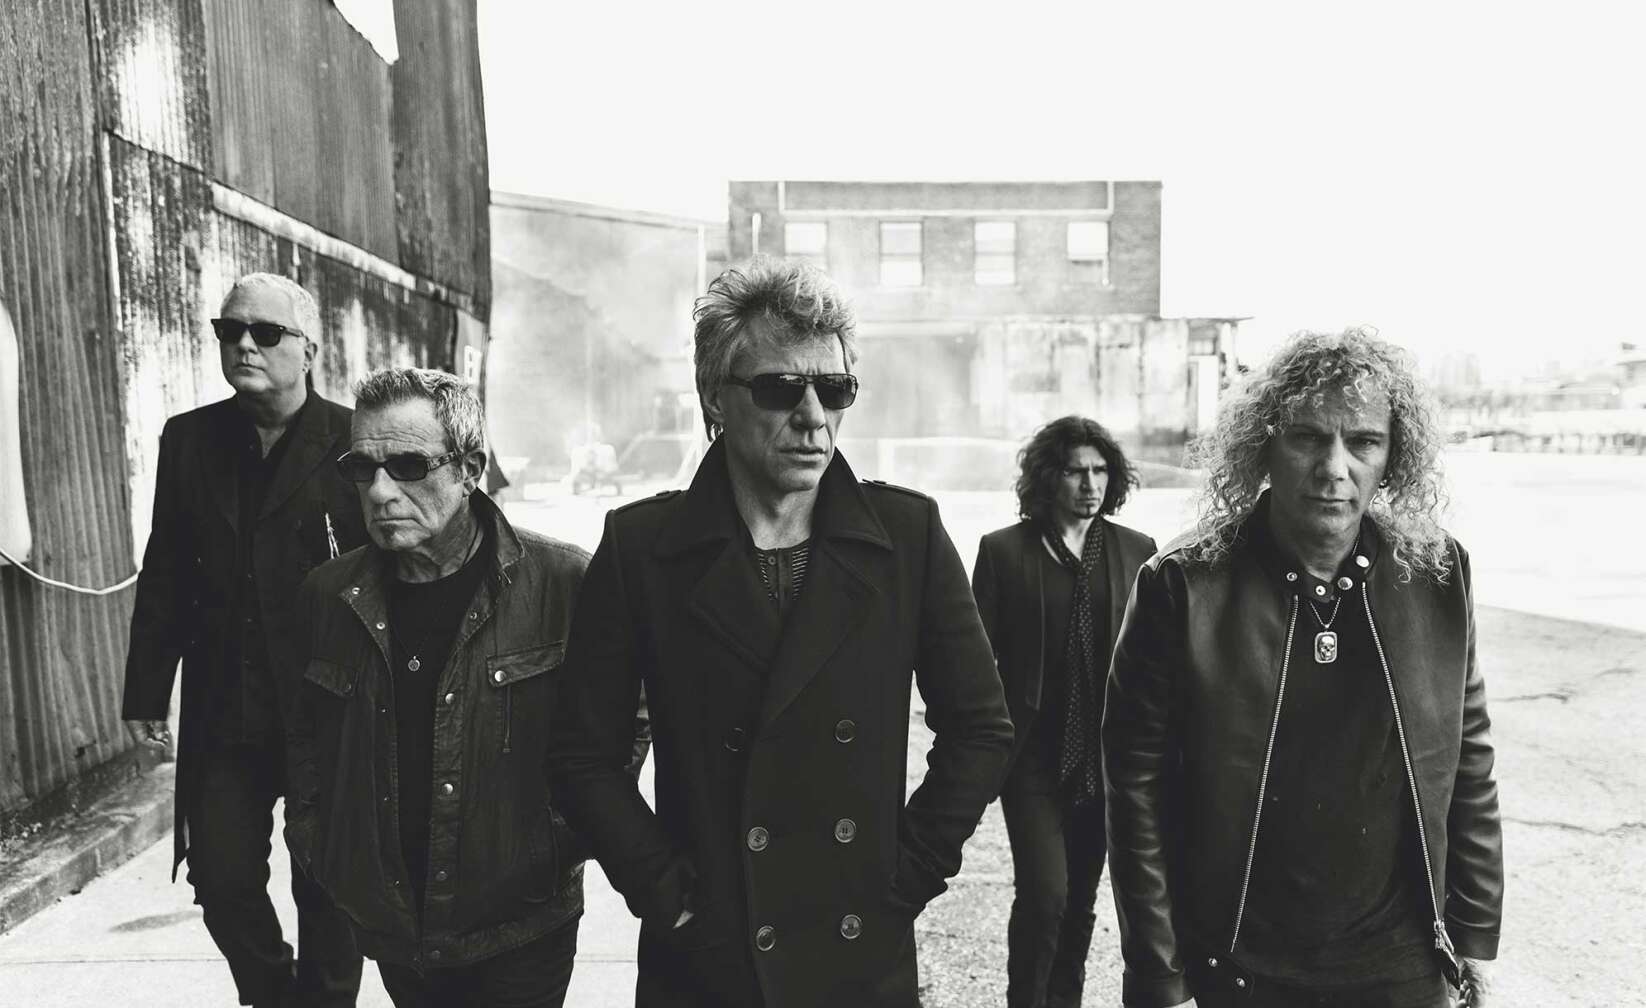 Bandfoto von Bon Jovi in Schwarz und Weiß